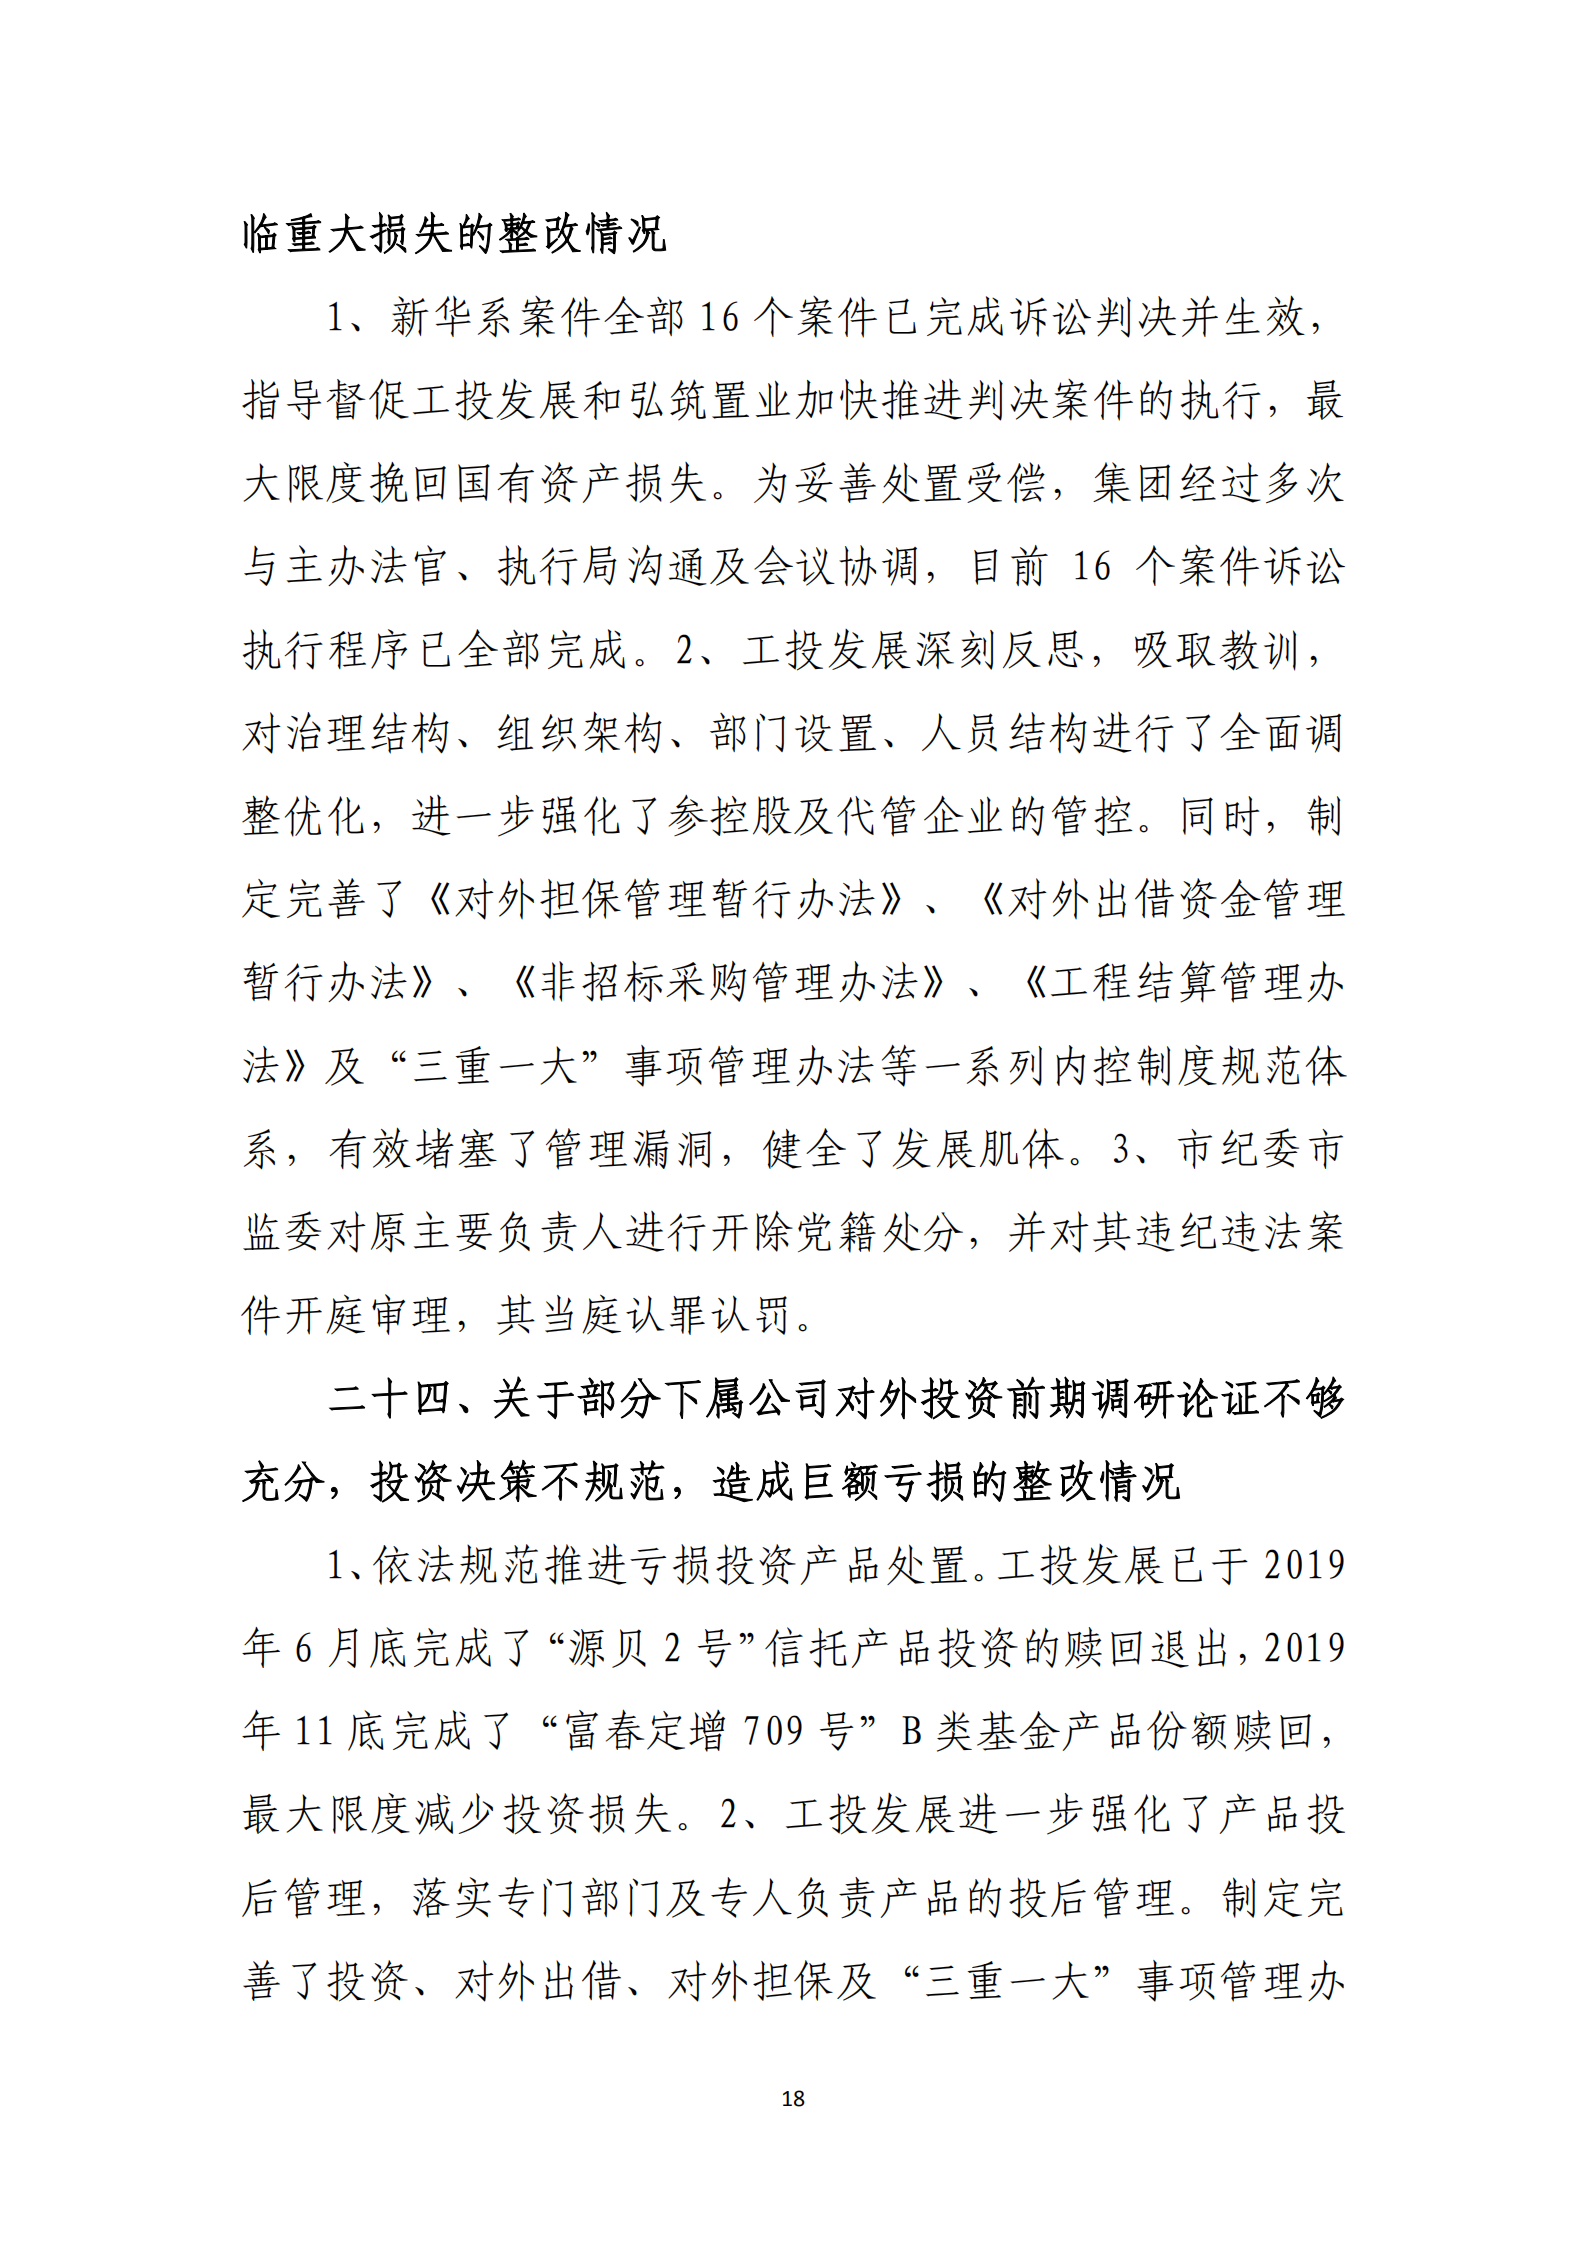 乐虎国际游戏官网党委关于巡察整改情况的通报_17.png